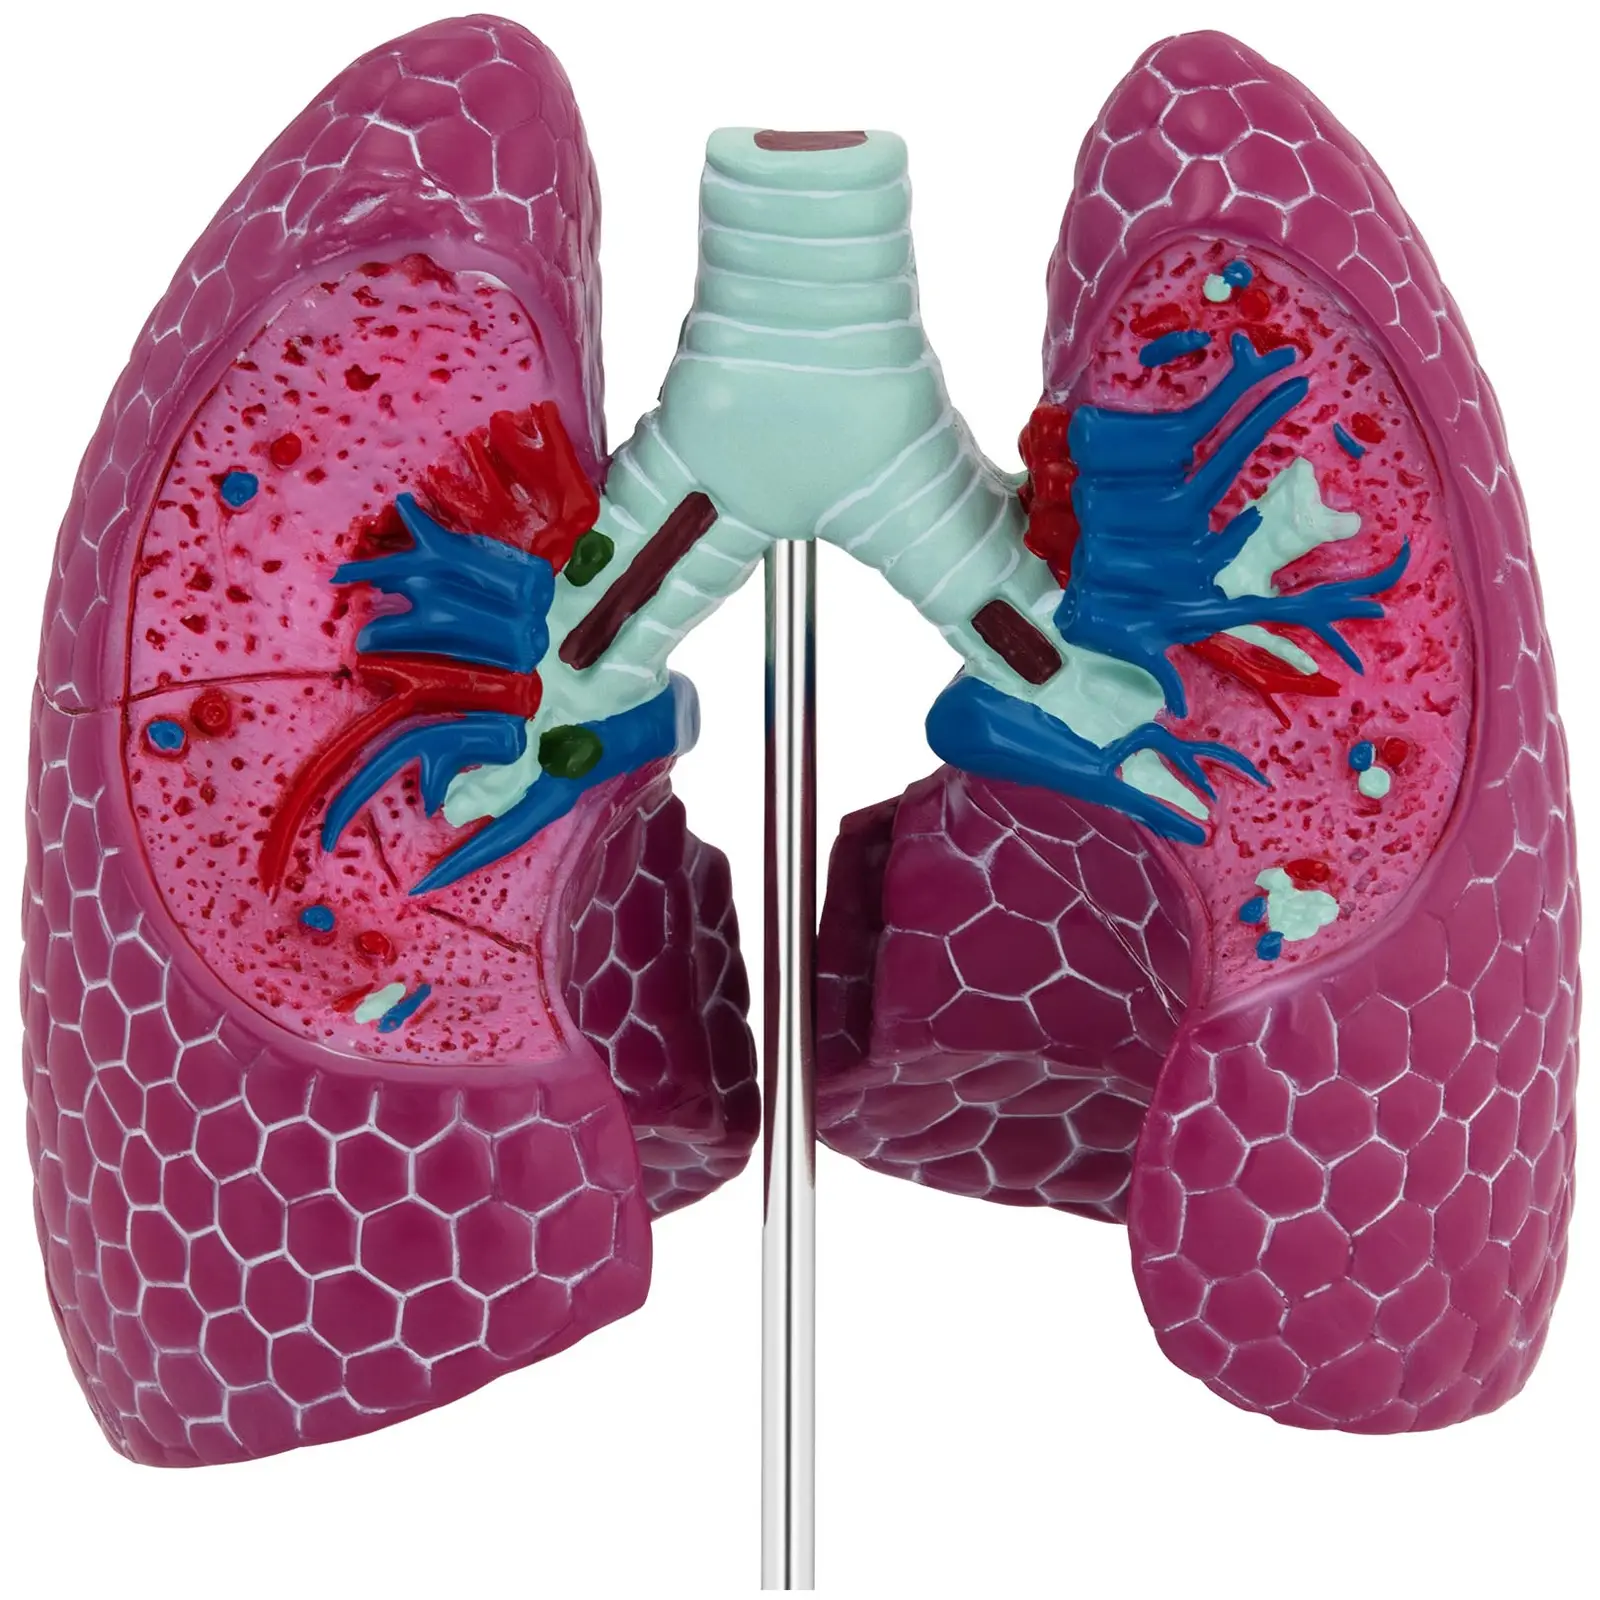 Maquette anatomique du système respiratoire - Avec poumon malade